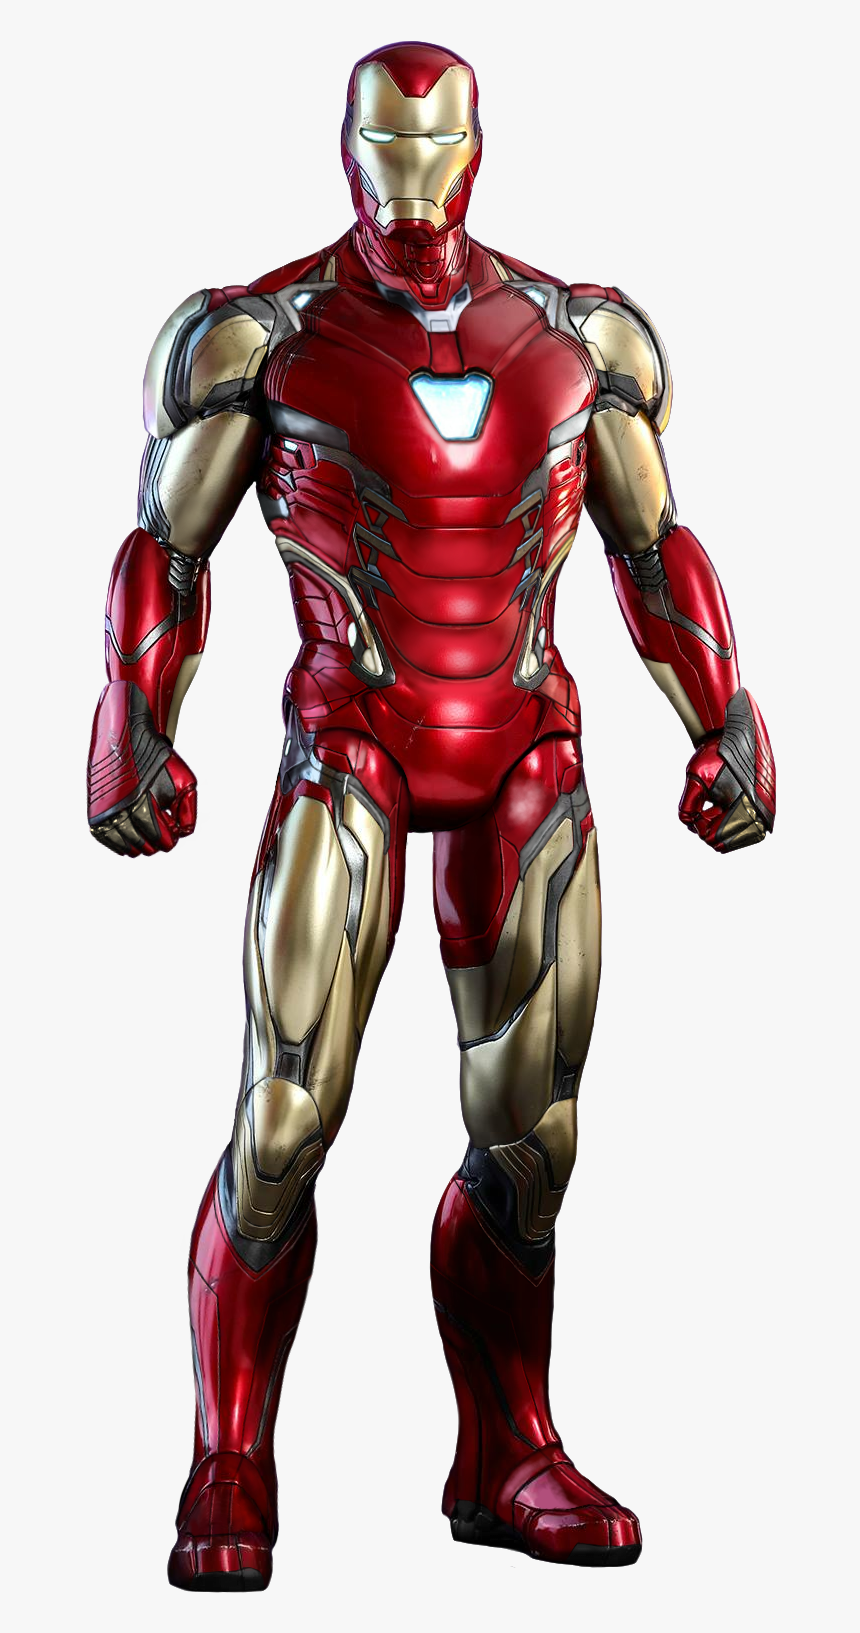 Iron Man Endgame Suit, HD Png Download, Free Download